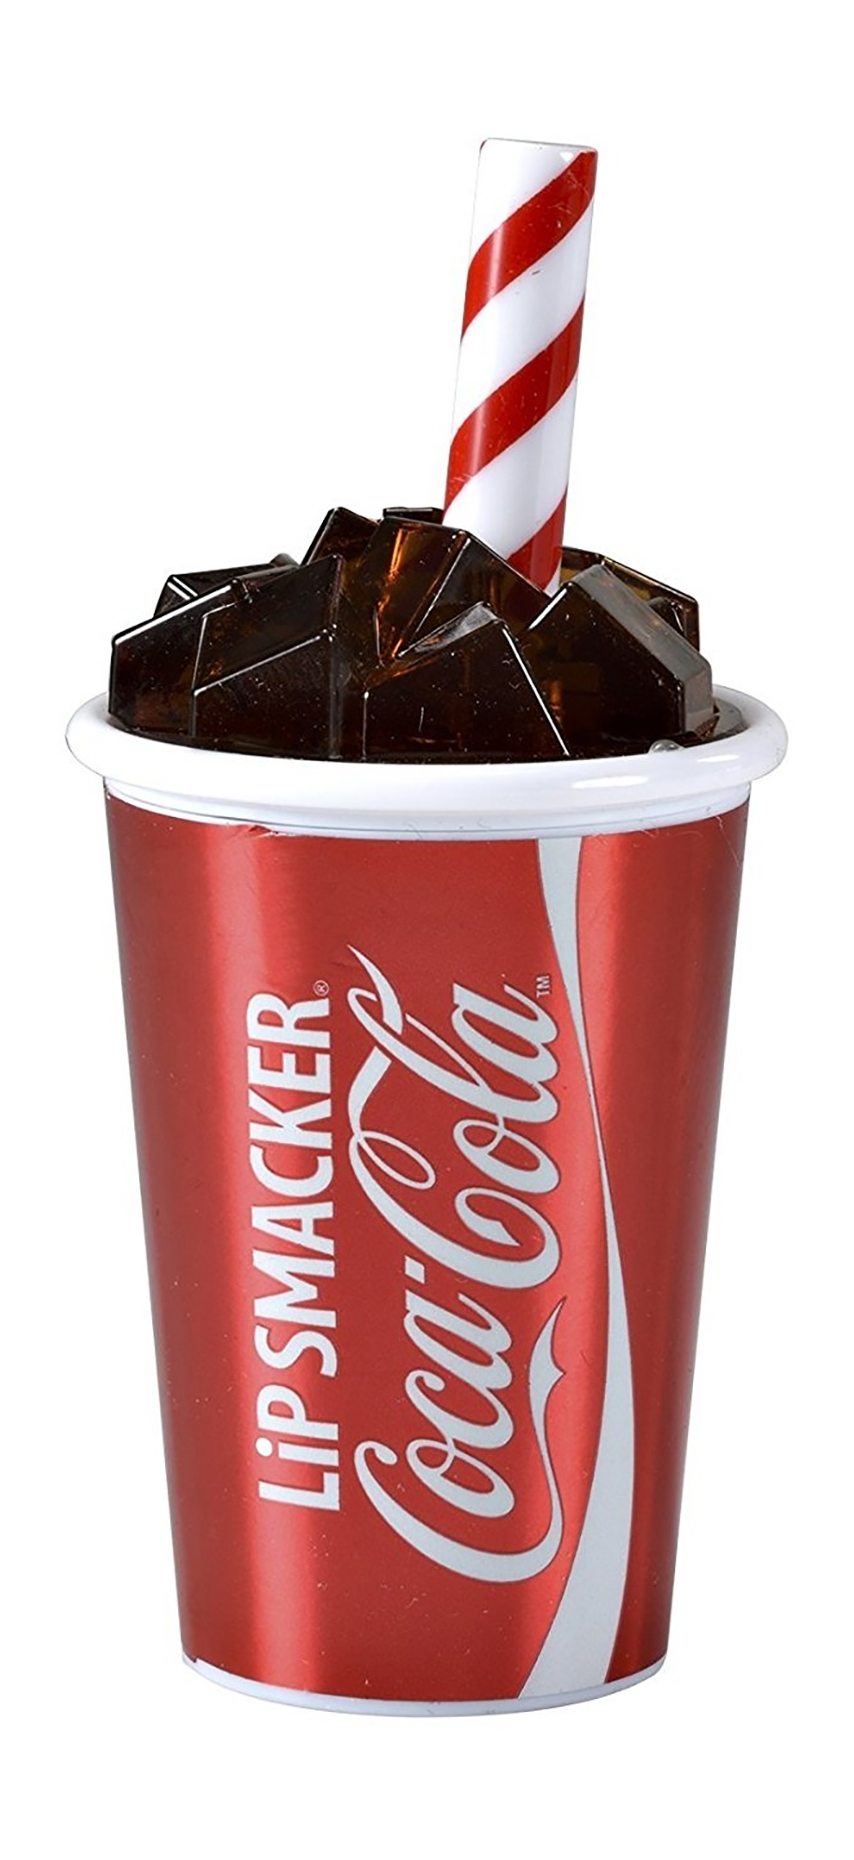 Бальзам для губ Lip Smacker Coca-Cola Cup Lip Balm увлажняющий, с ароматом колы 7,4 г бальзам для губ lip smacker coca cola cup lip balm 7 4 г